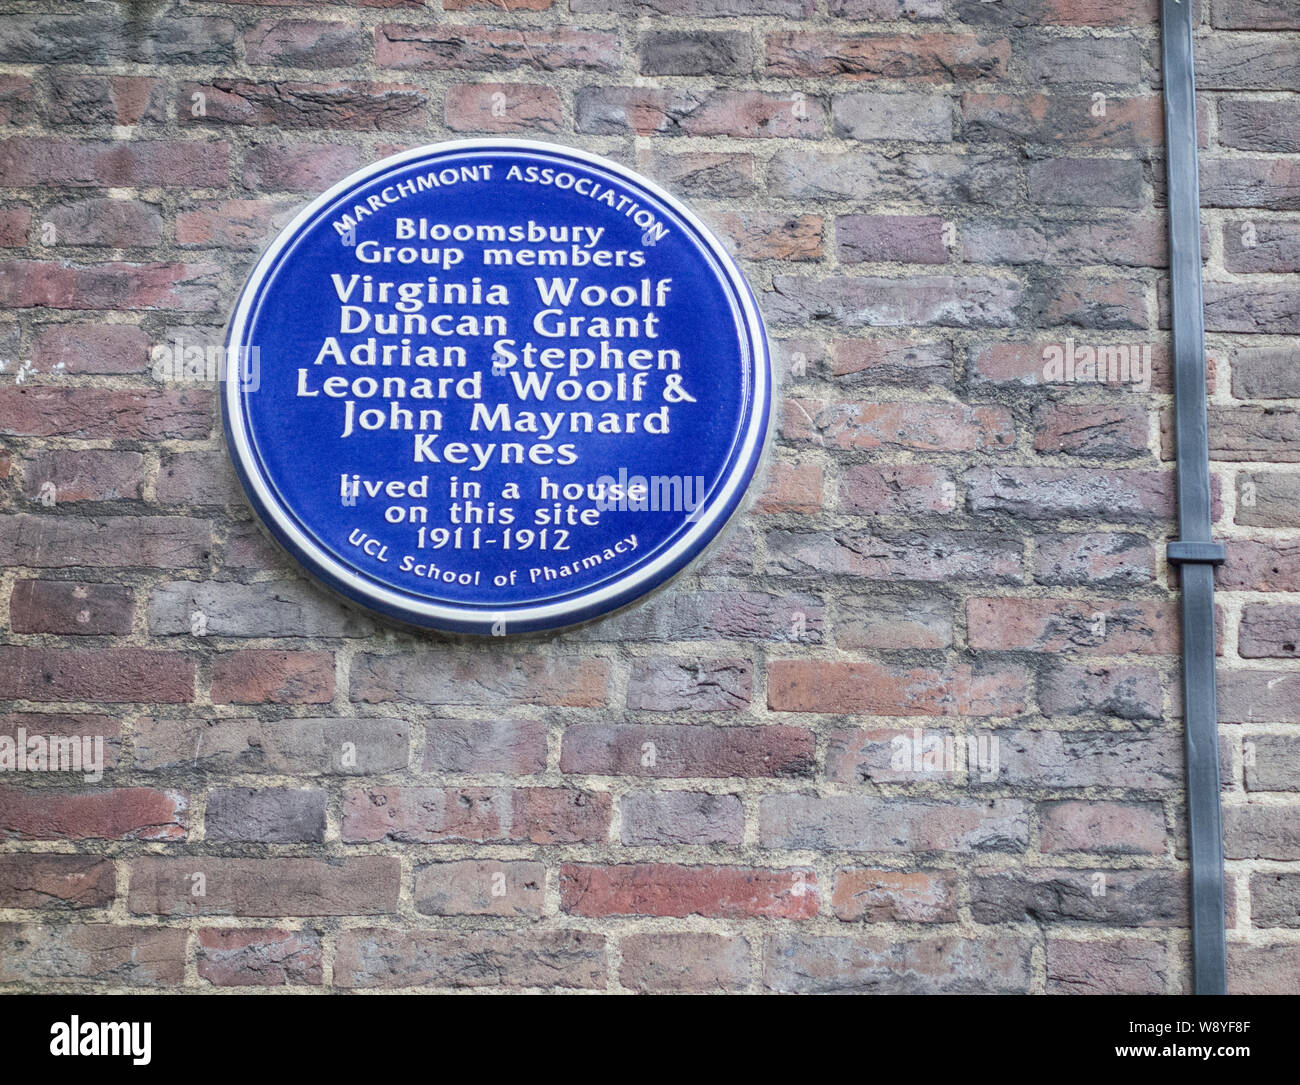 Blue plaque commémorant le Bloomsbury Group members : Virginia Woolf, Duncan Grant, Adrian Stephen, Leonard Woolf et John Maynard Keynes, London, UK Banque D'Images